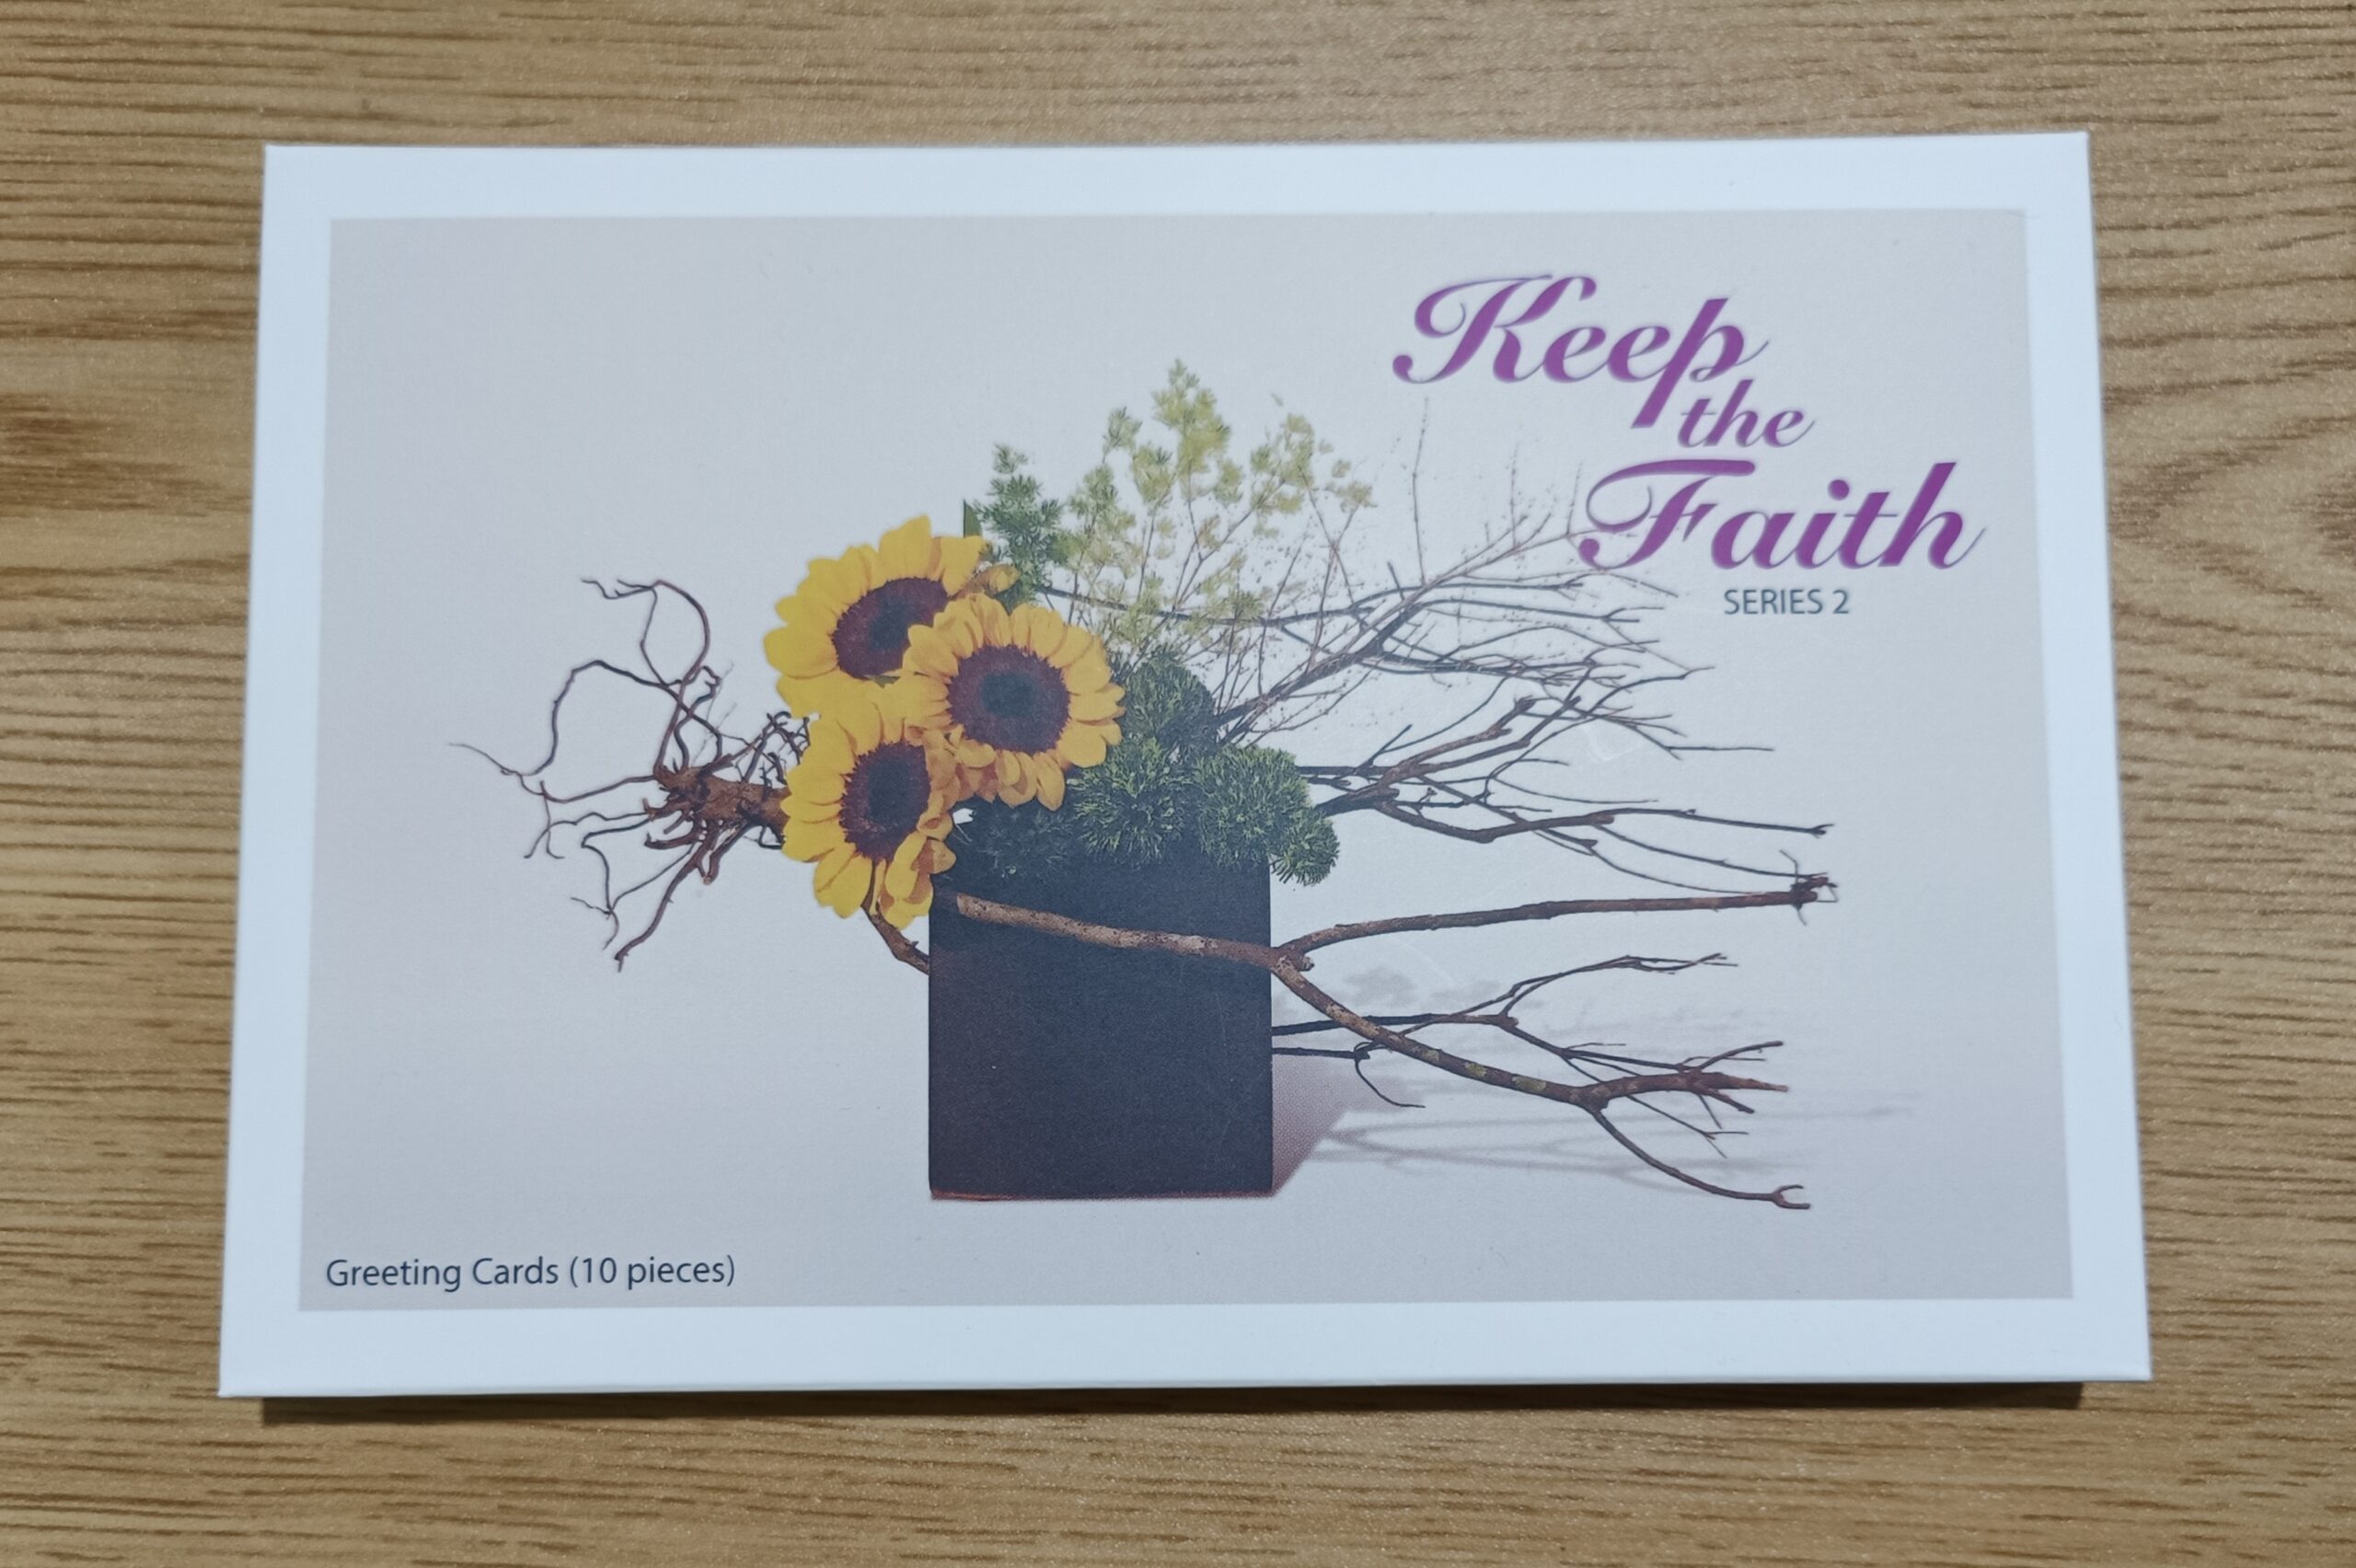 KEEP THE FAITH Cards Series 2 by Fr. Jason Dy, SJ